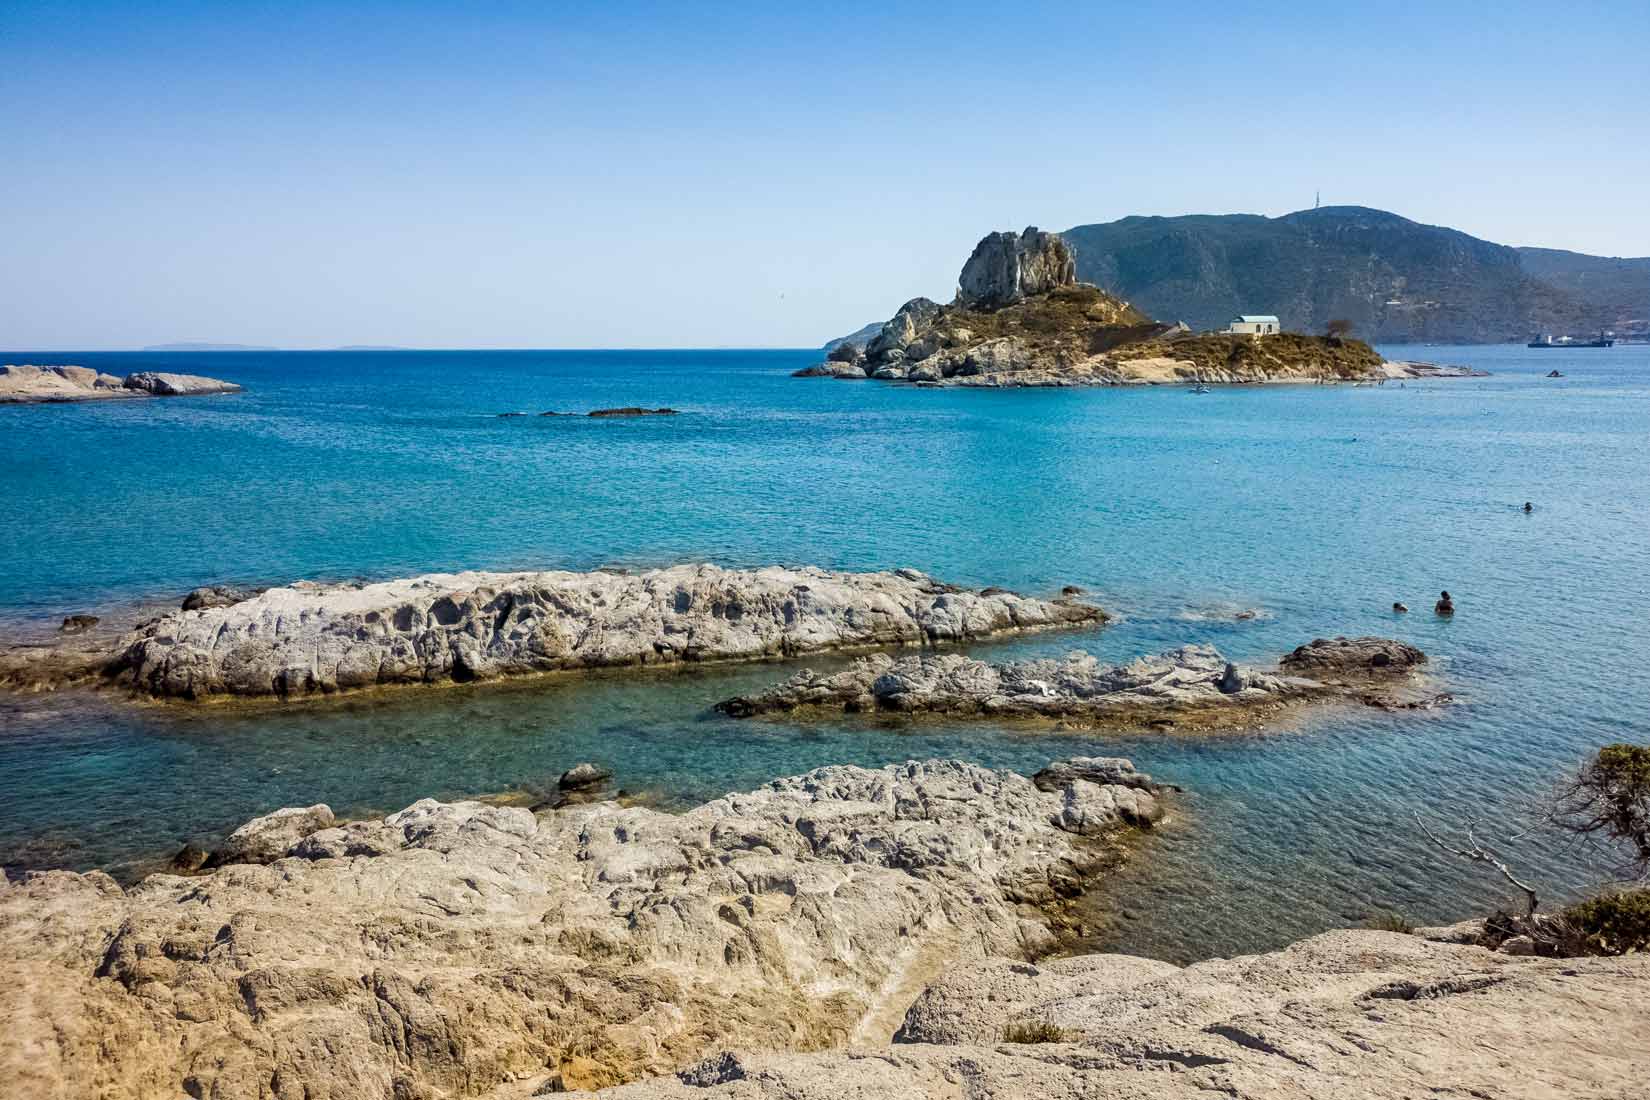 Ostrůvek Kastrí je vzdálen několik málo temp od Ag. Stefanos beach